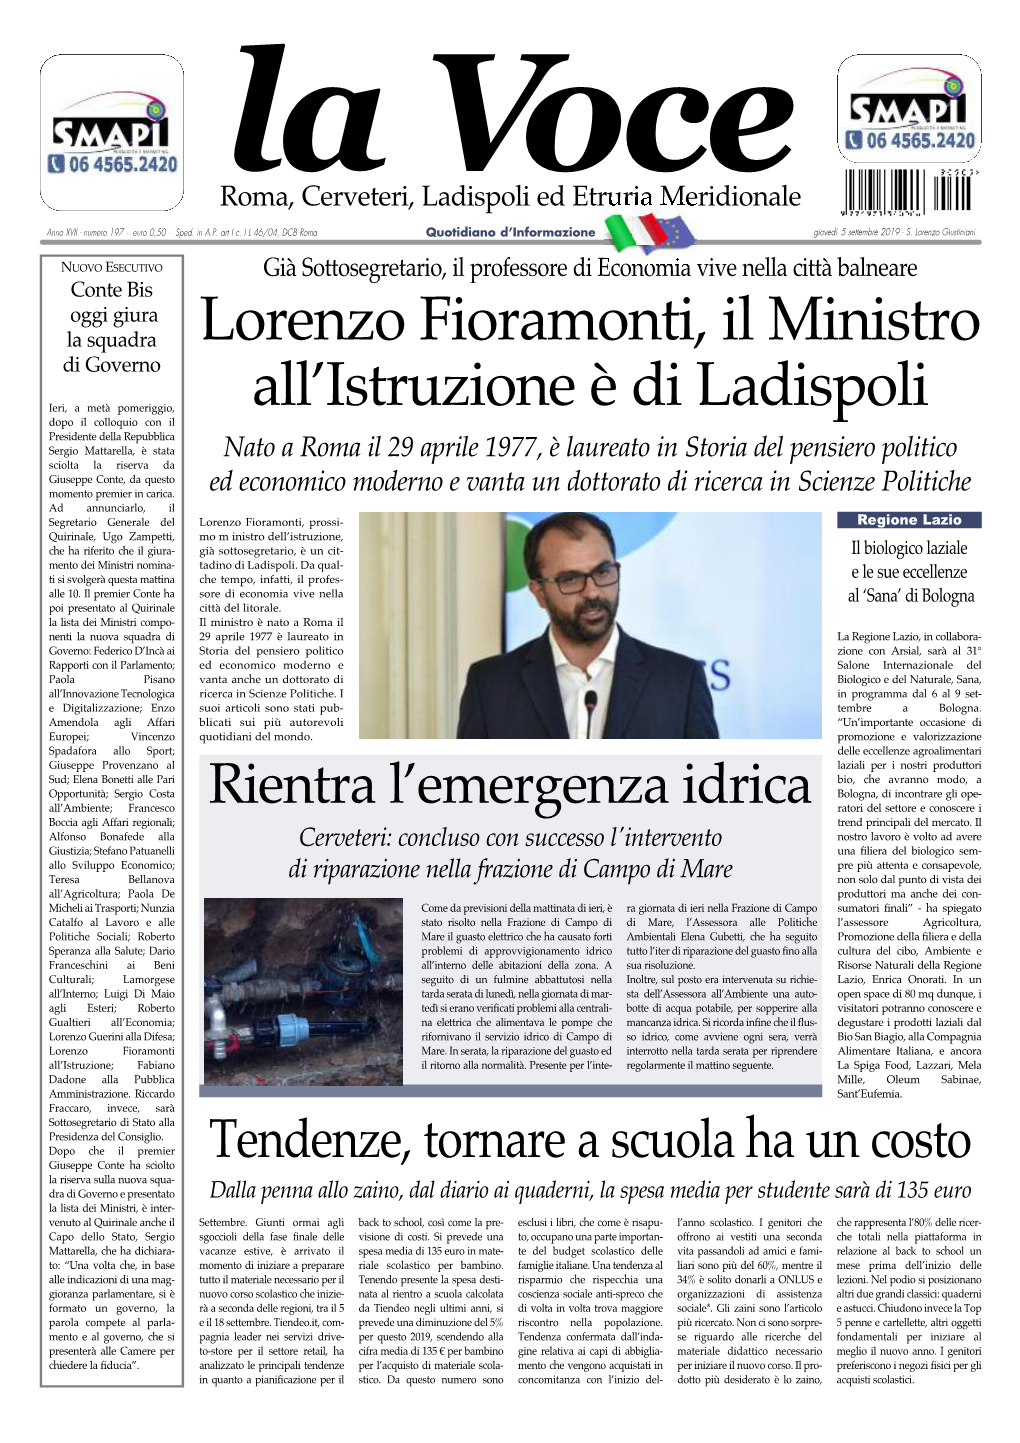 Lorenzo Fioramonti, Il Ministro All'istruzione È Di Ladispoli